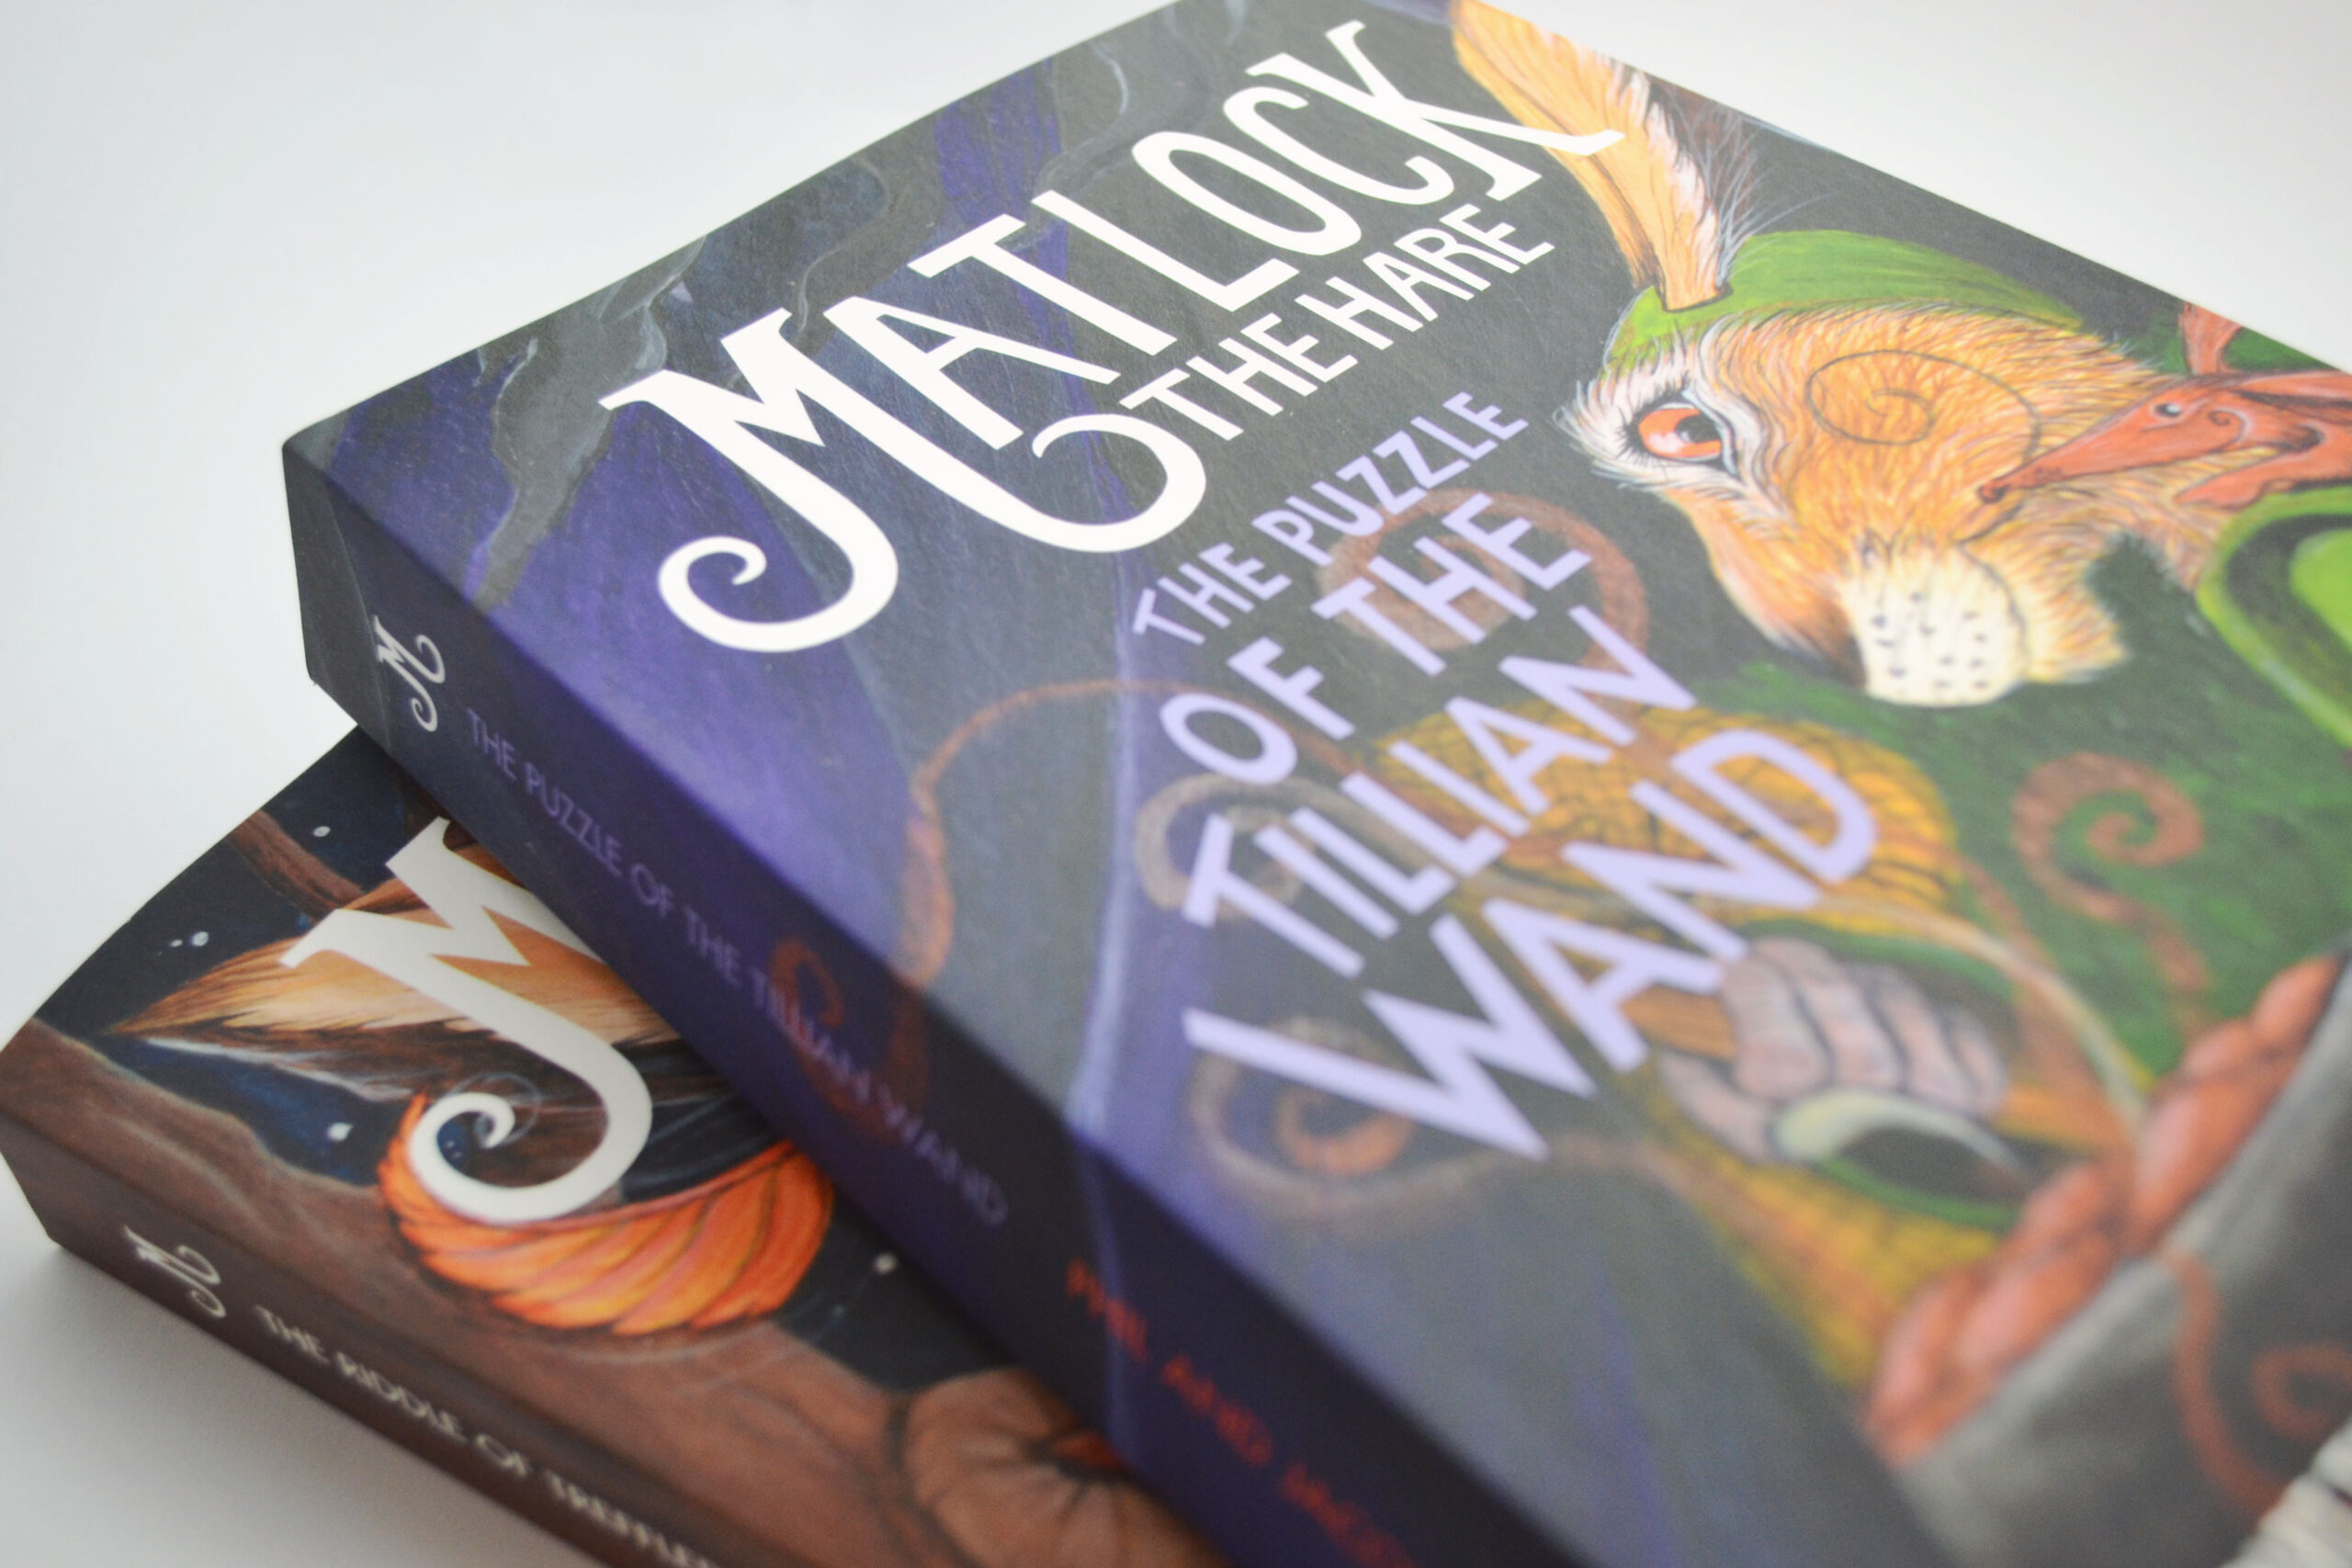 Matlock the Hare books © 2016 P. & J. Lovesey